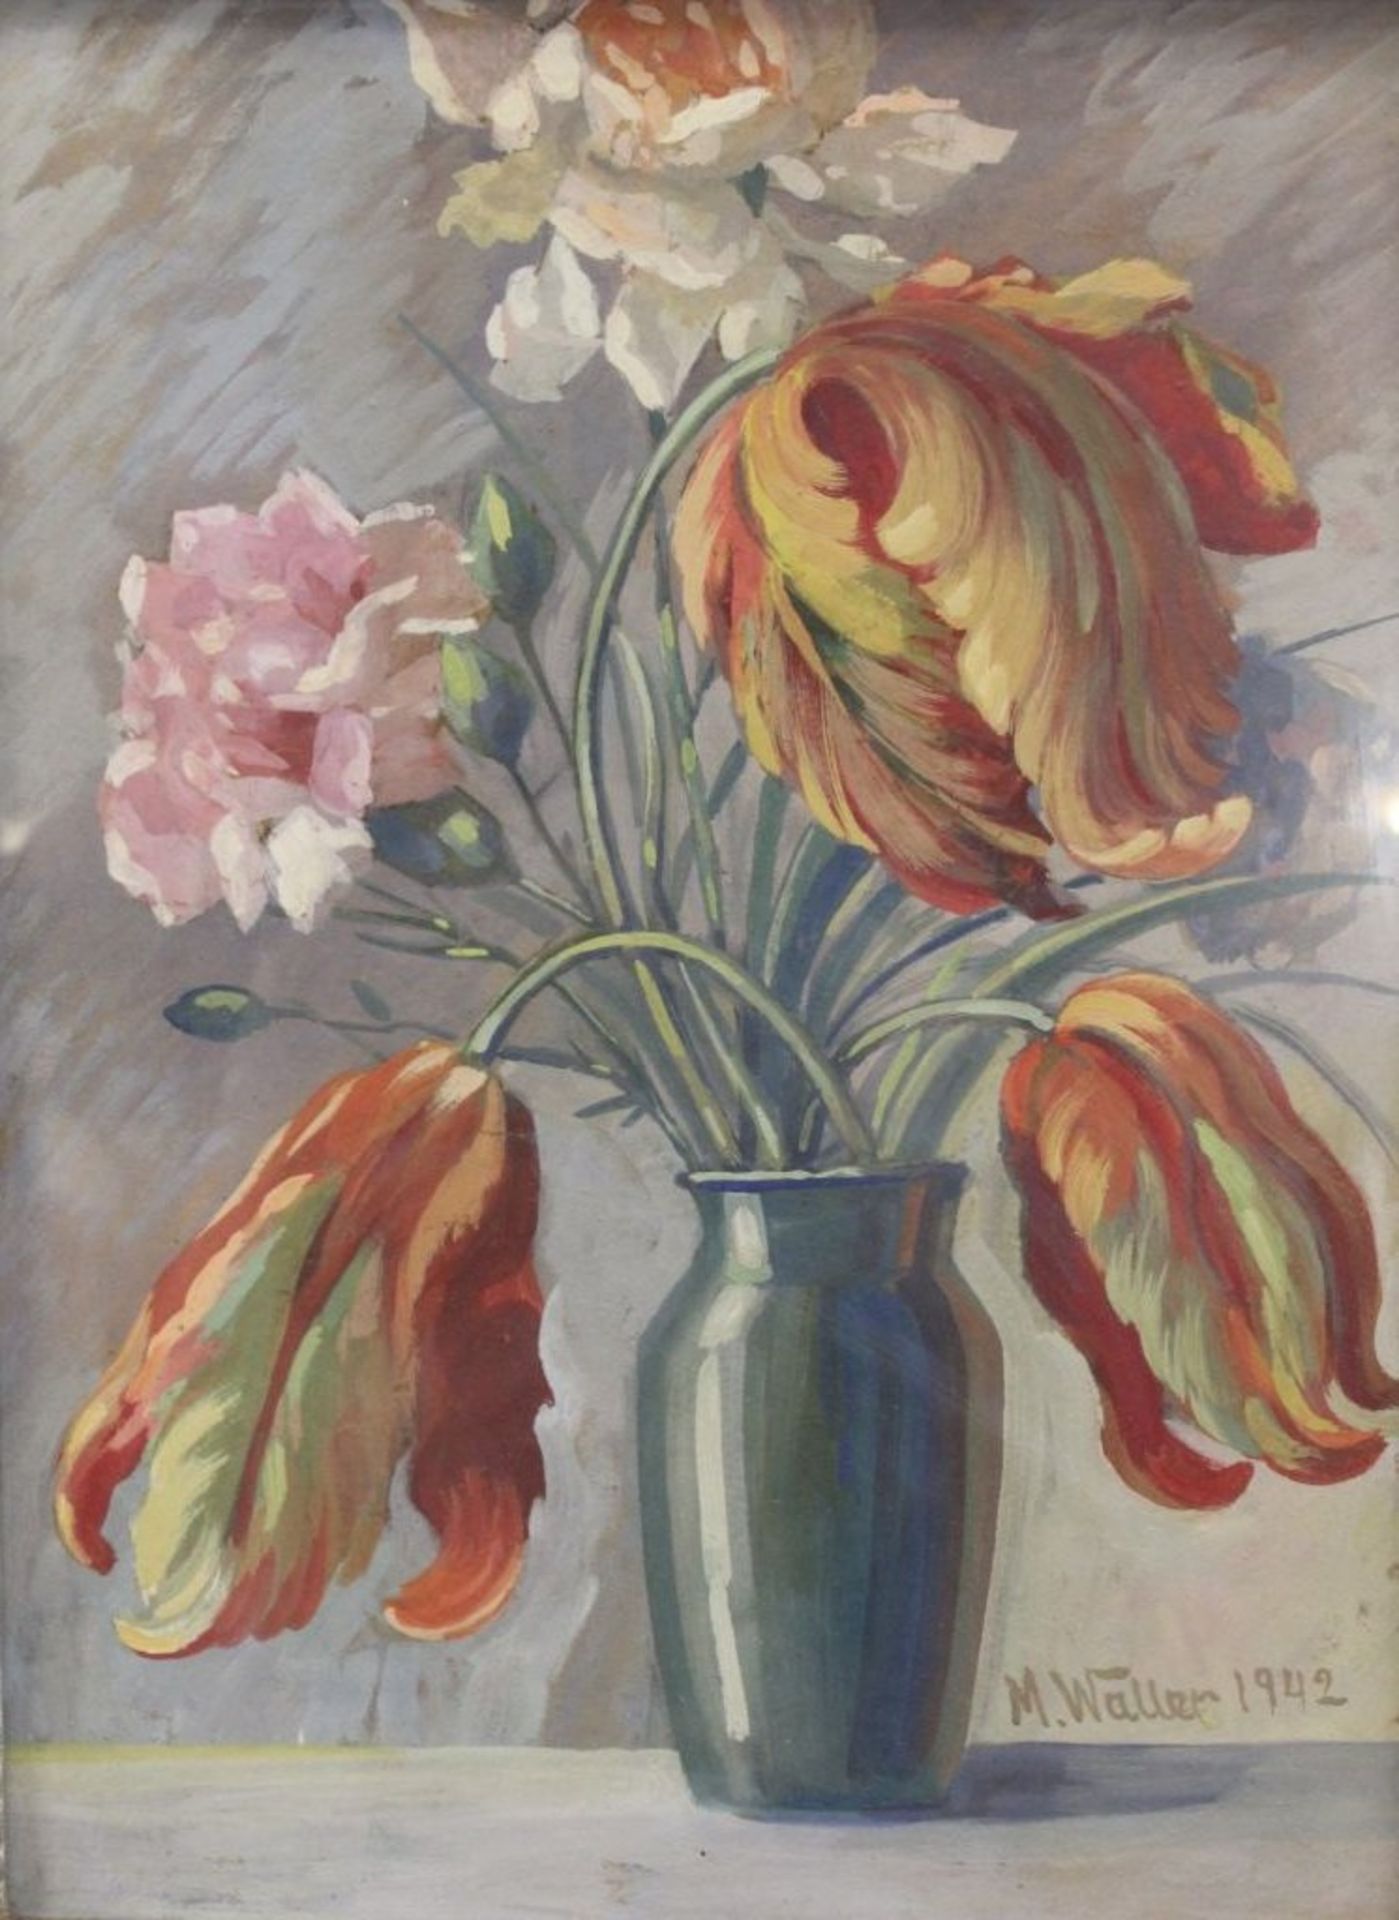 M.Waller 1942 "Blumen in Vase", Aquarell, ger./Glas, RG 59 x 46cm.